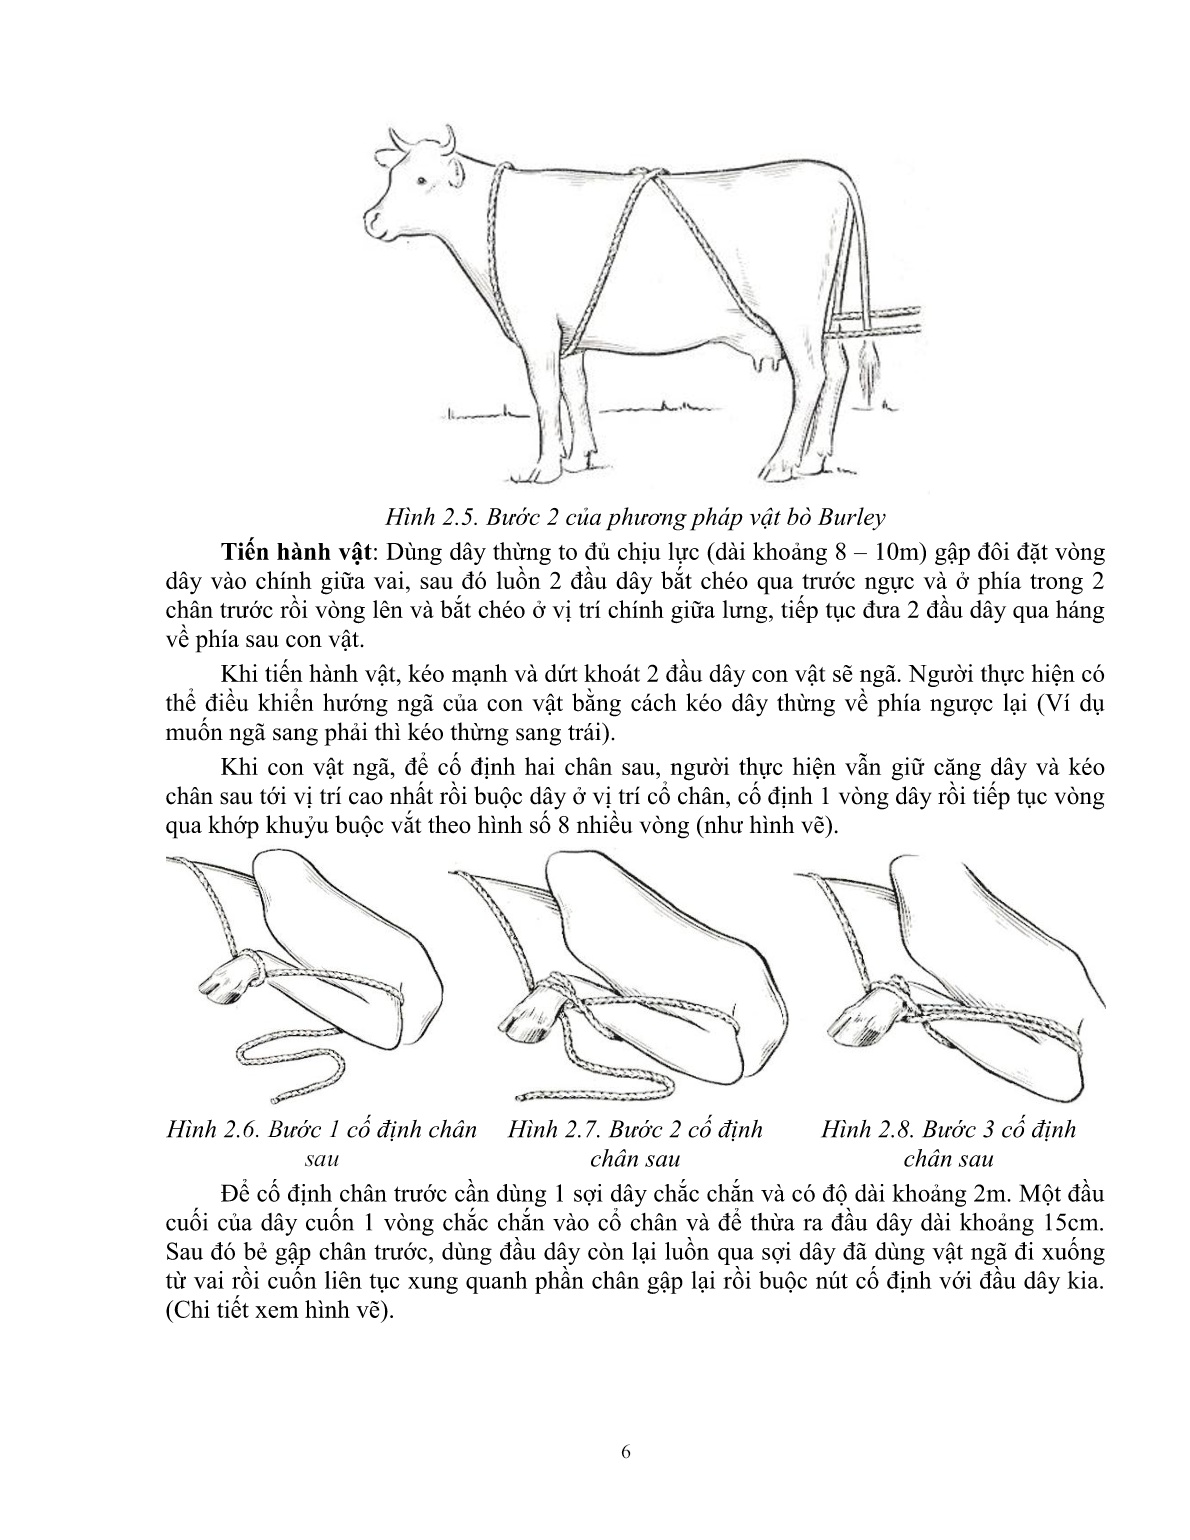 Giáo trình Kỹ thuật thực hành chăn nuôi – thú y áp dụng cho trâu, bò (Trình độ: Đào tạo dưới 3 tháng) trang 7